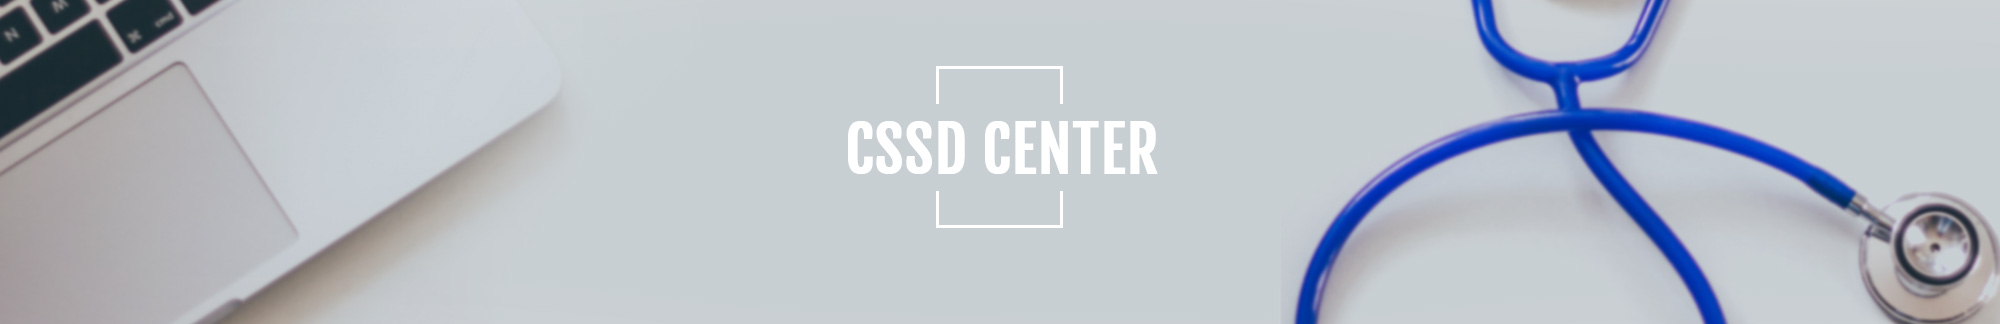 CSSD-центр